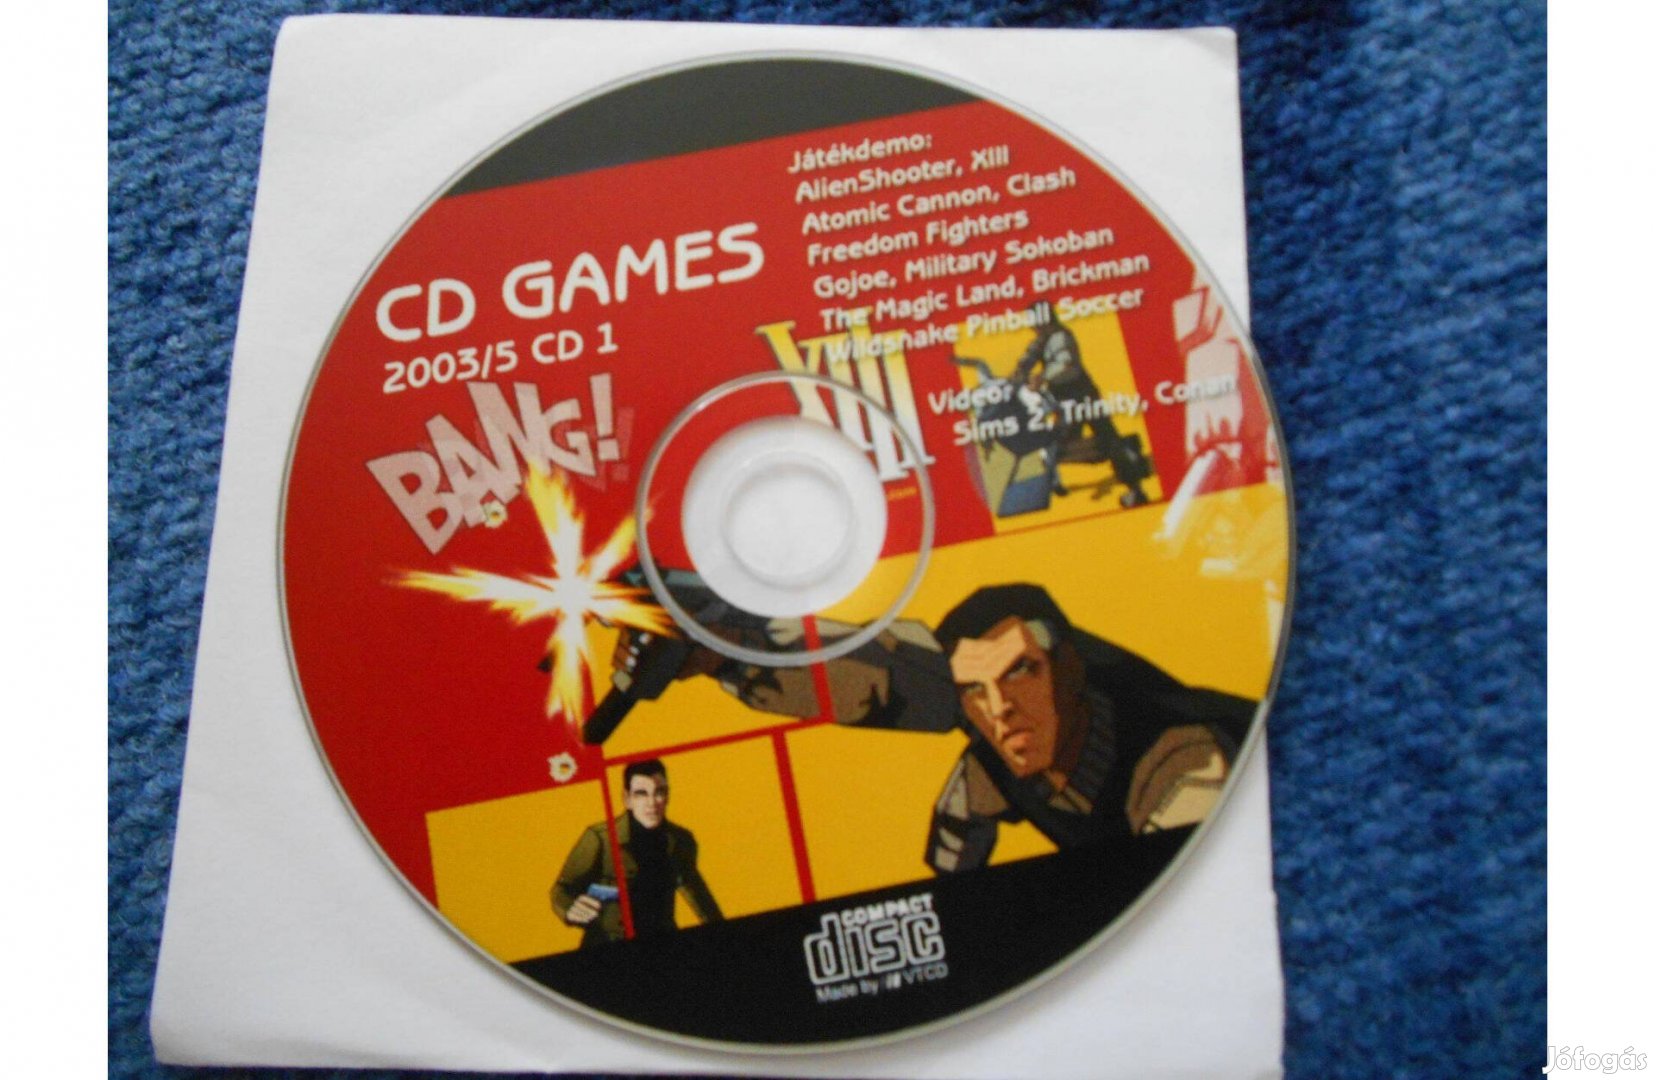 CD Games 2003/5 CD